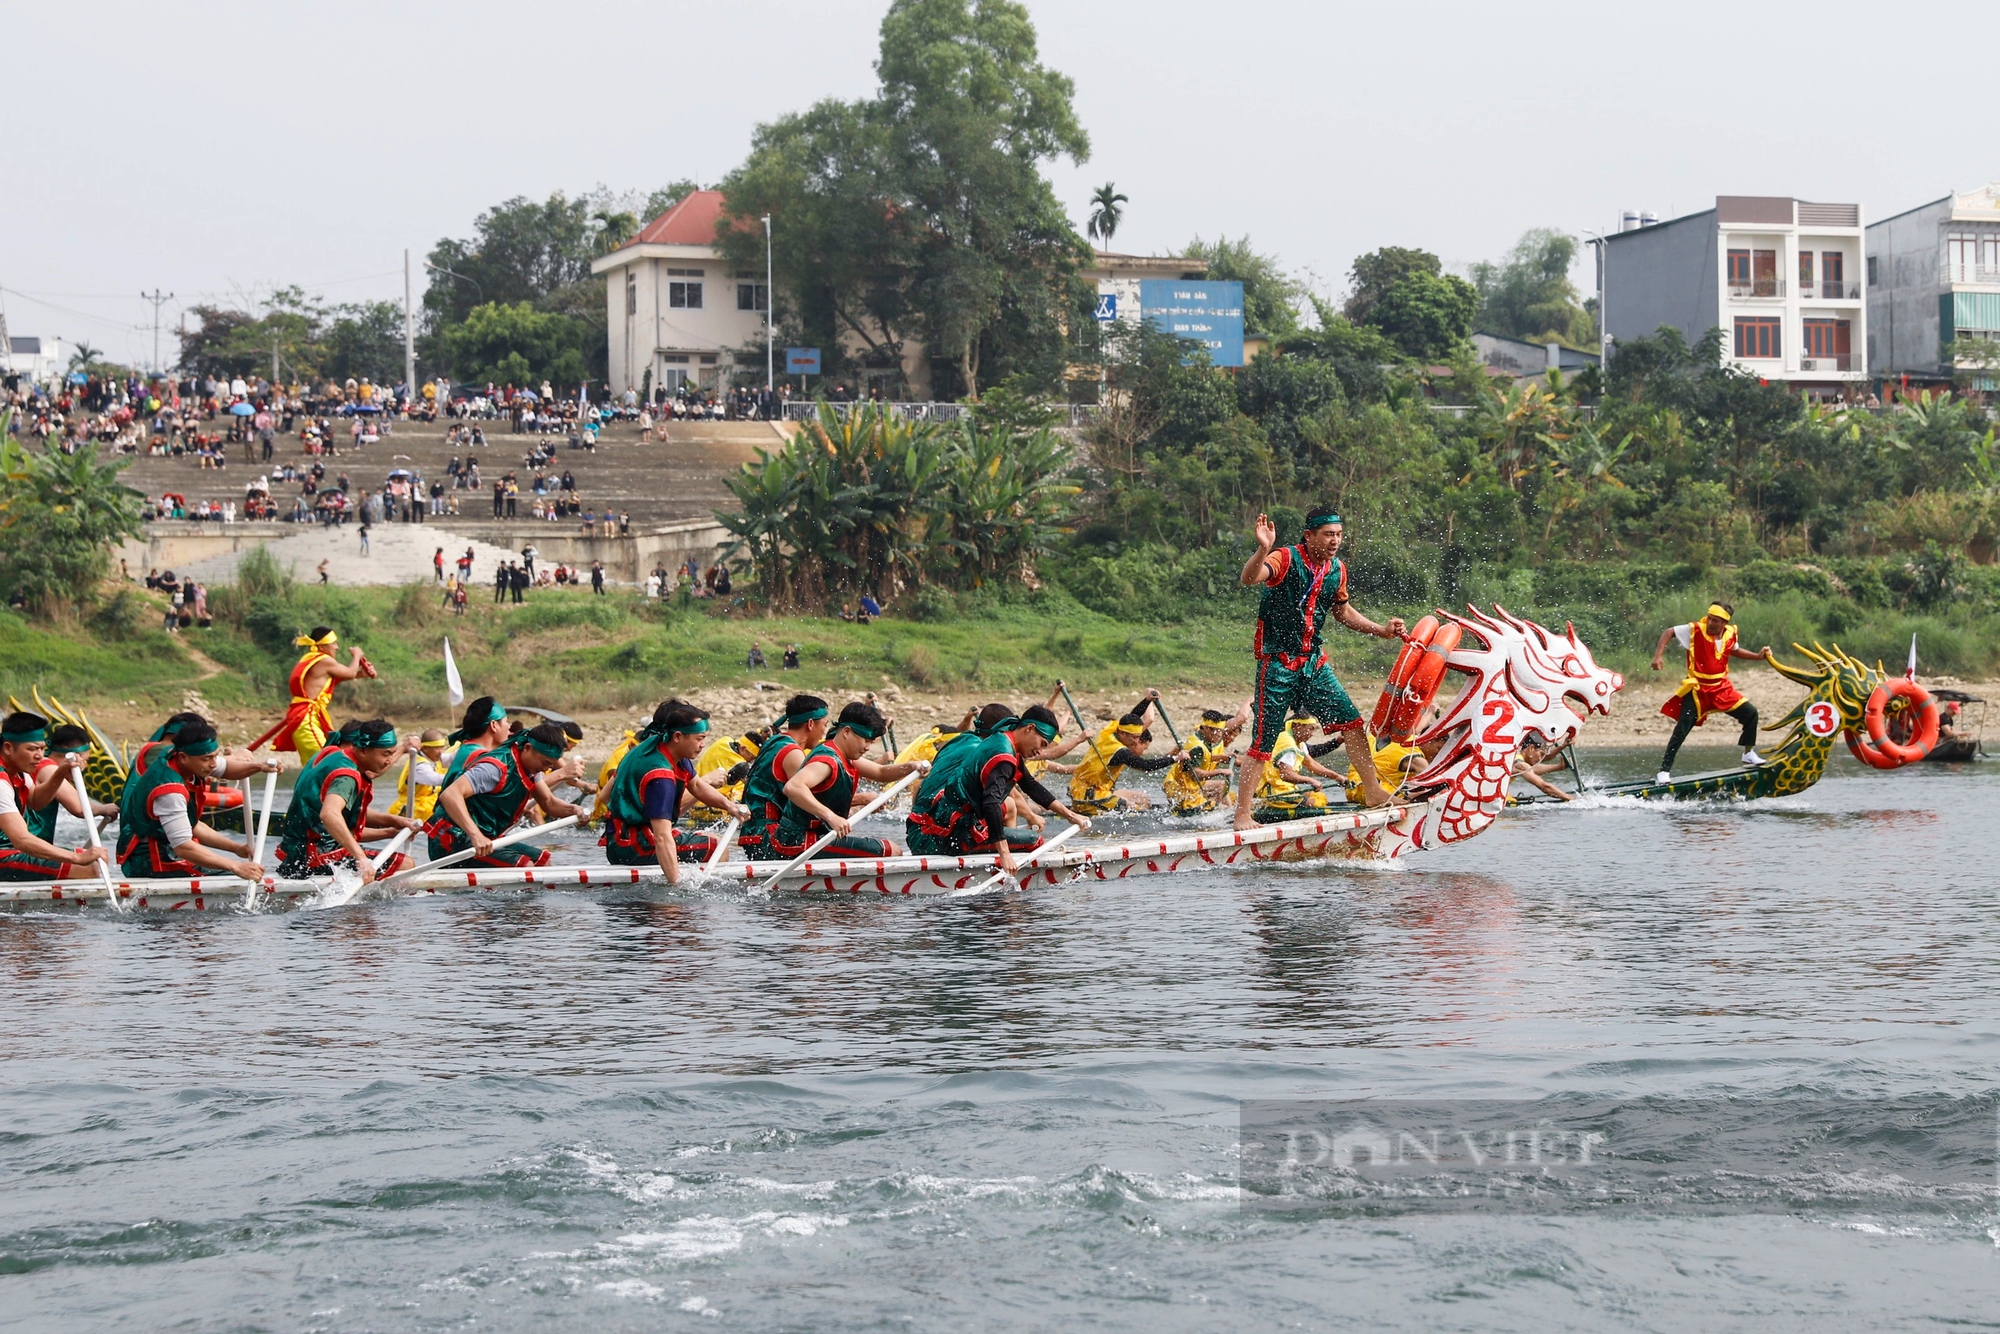 450 tay chải miền sơn cước gồng mình đua thuyền rồng trên sông Lô ở Tuyên Quang- Ảnh 9.